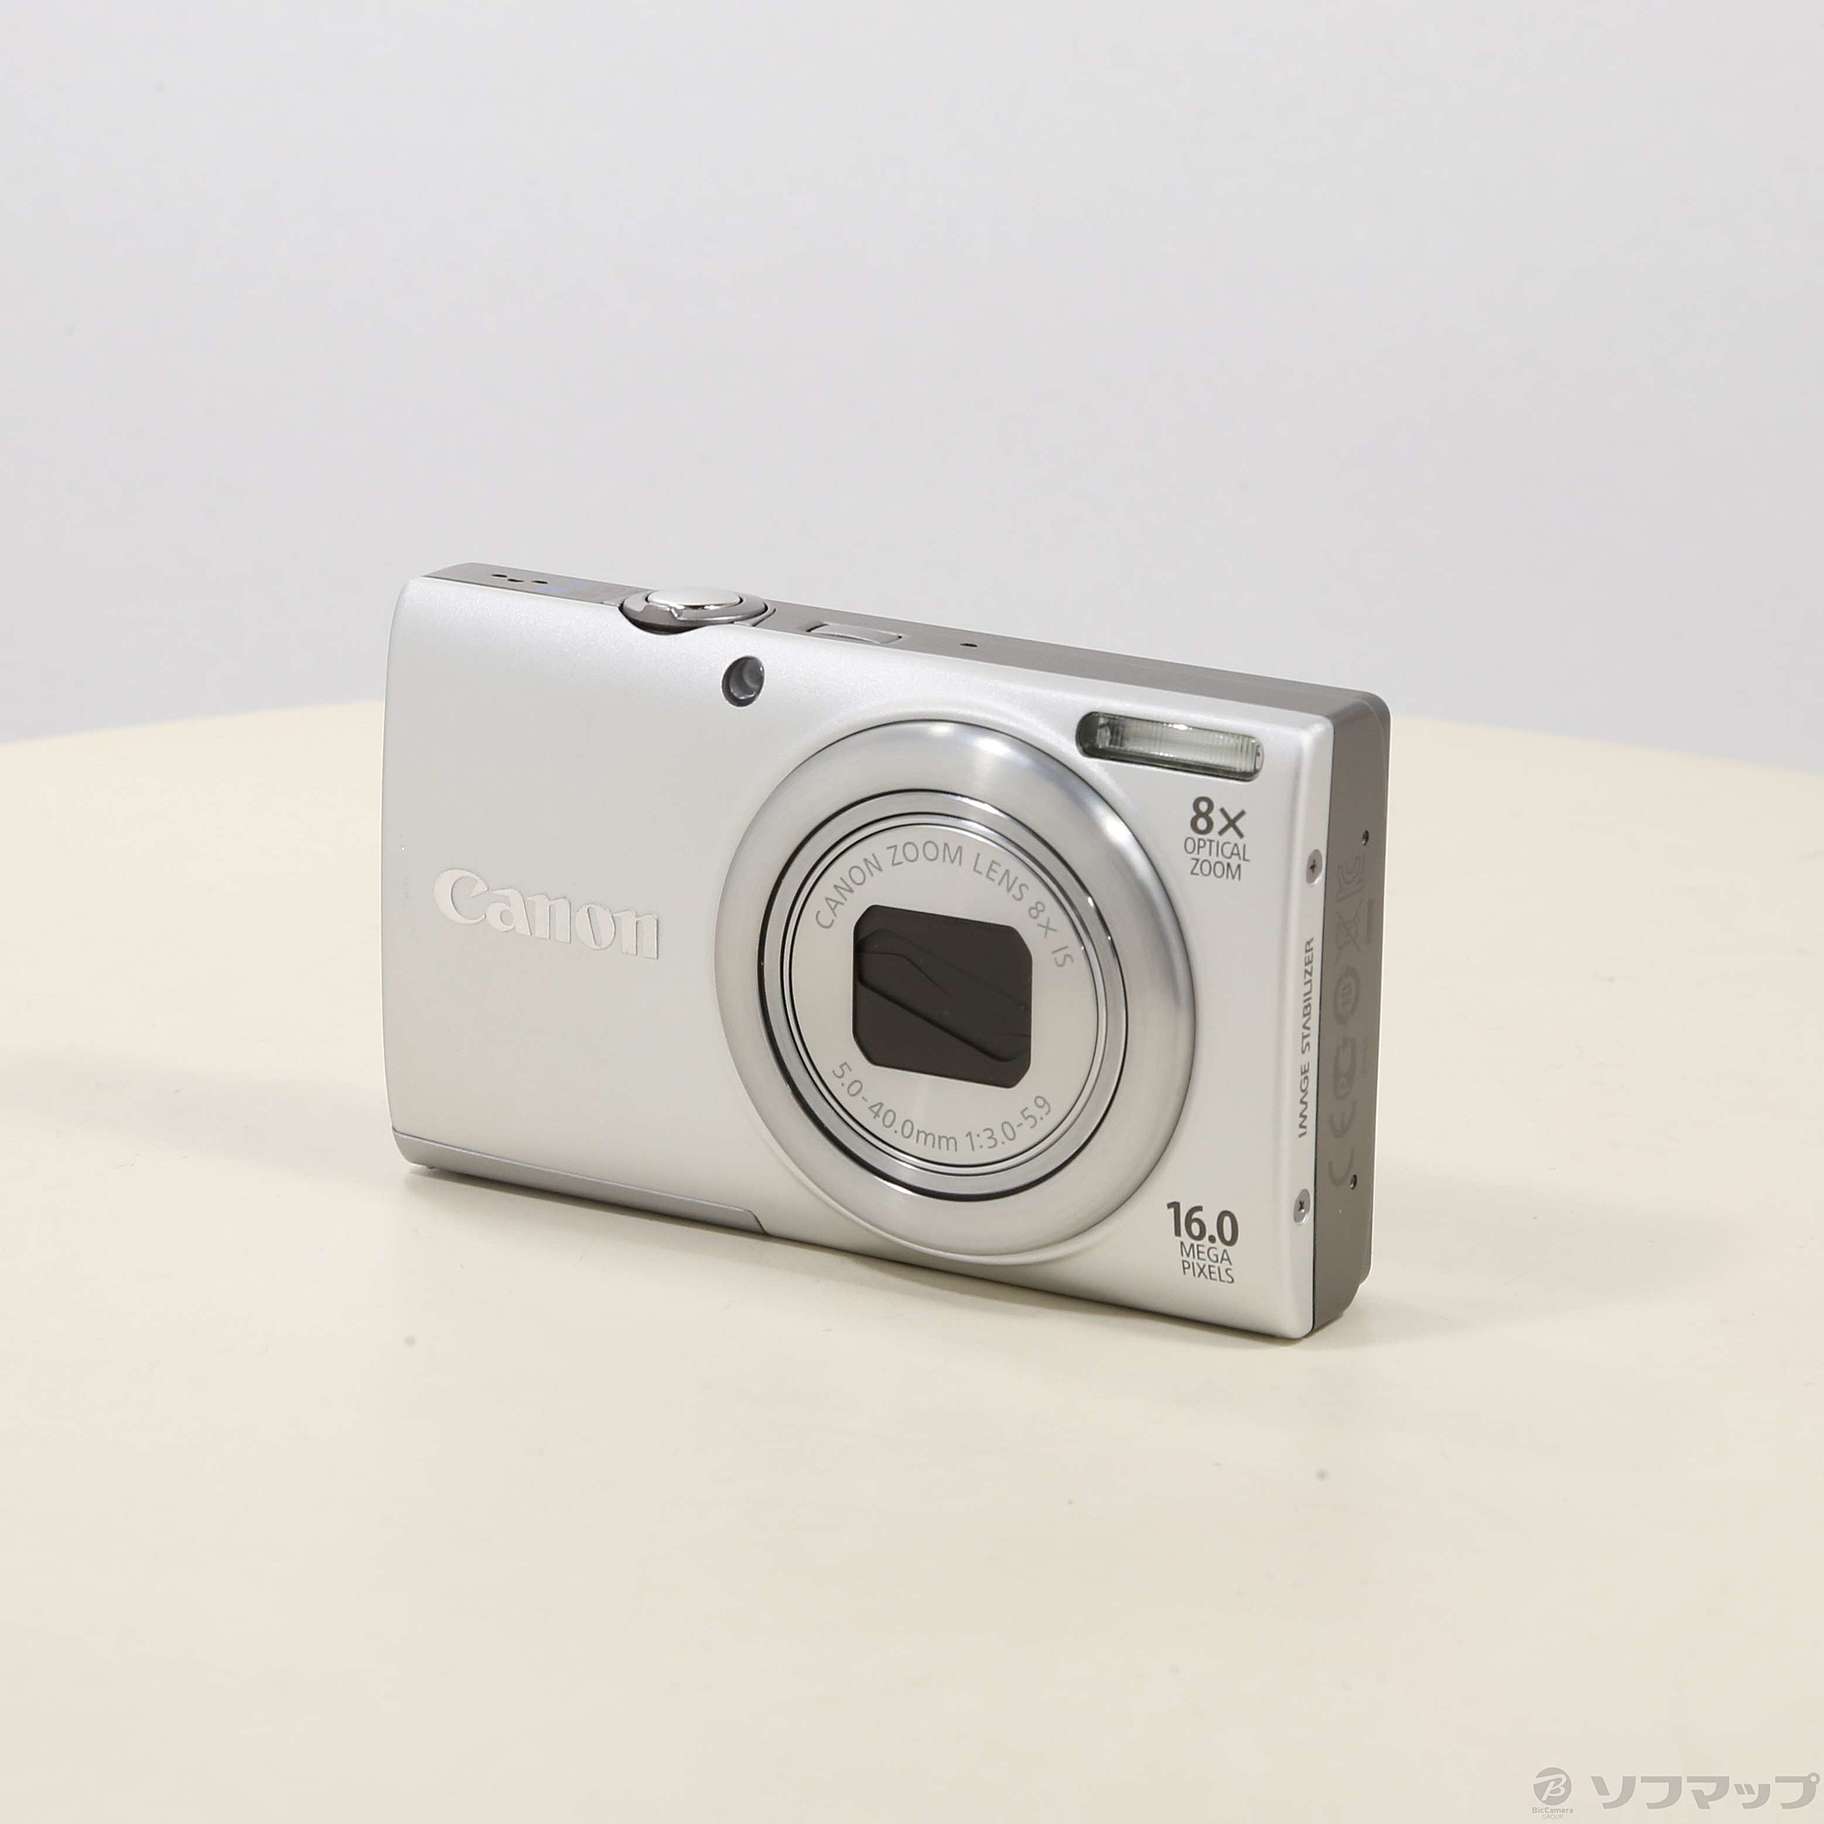 【J24】Canon PowerShot A4000 IS SL デジカメコンパクトカメラ